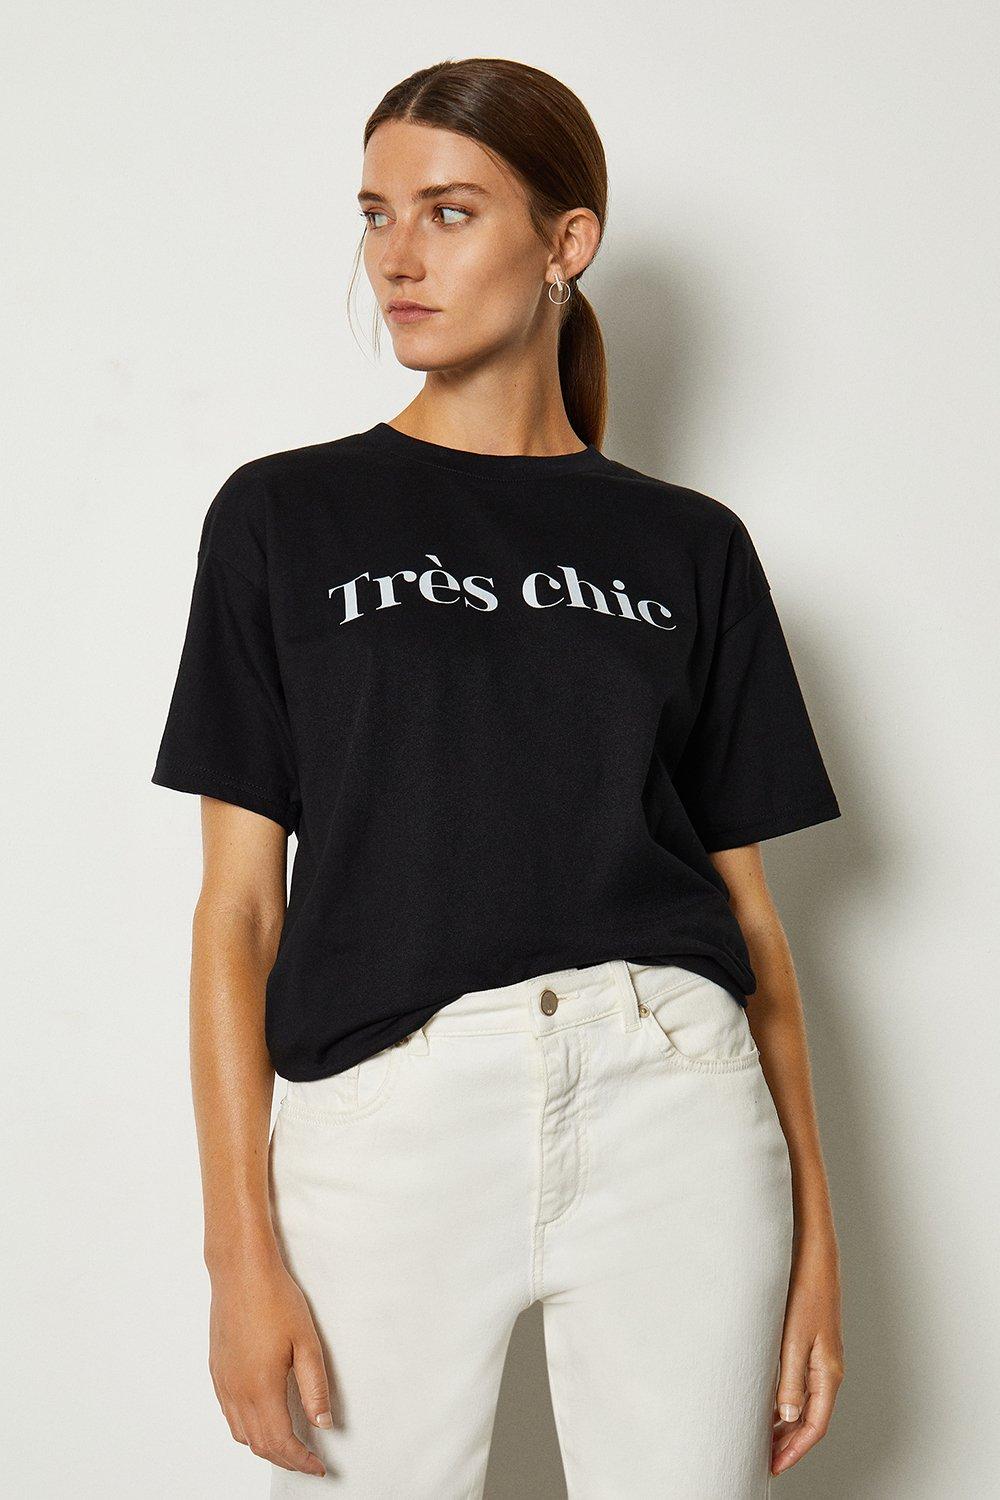 Tres Chic Slogan Cotton T Shirt | Karen Millen